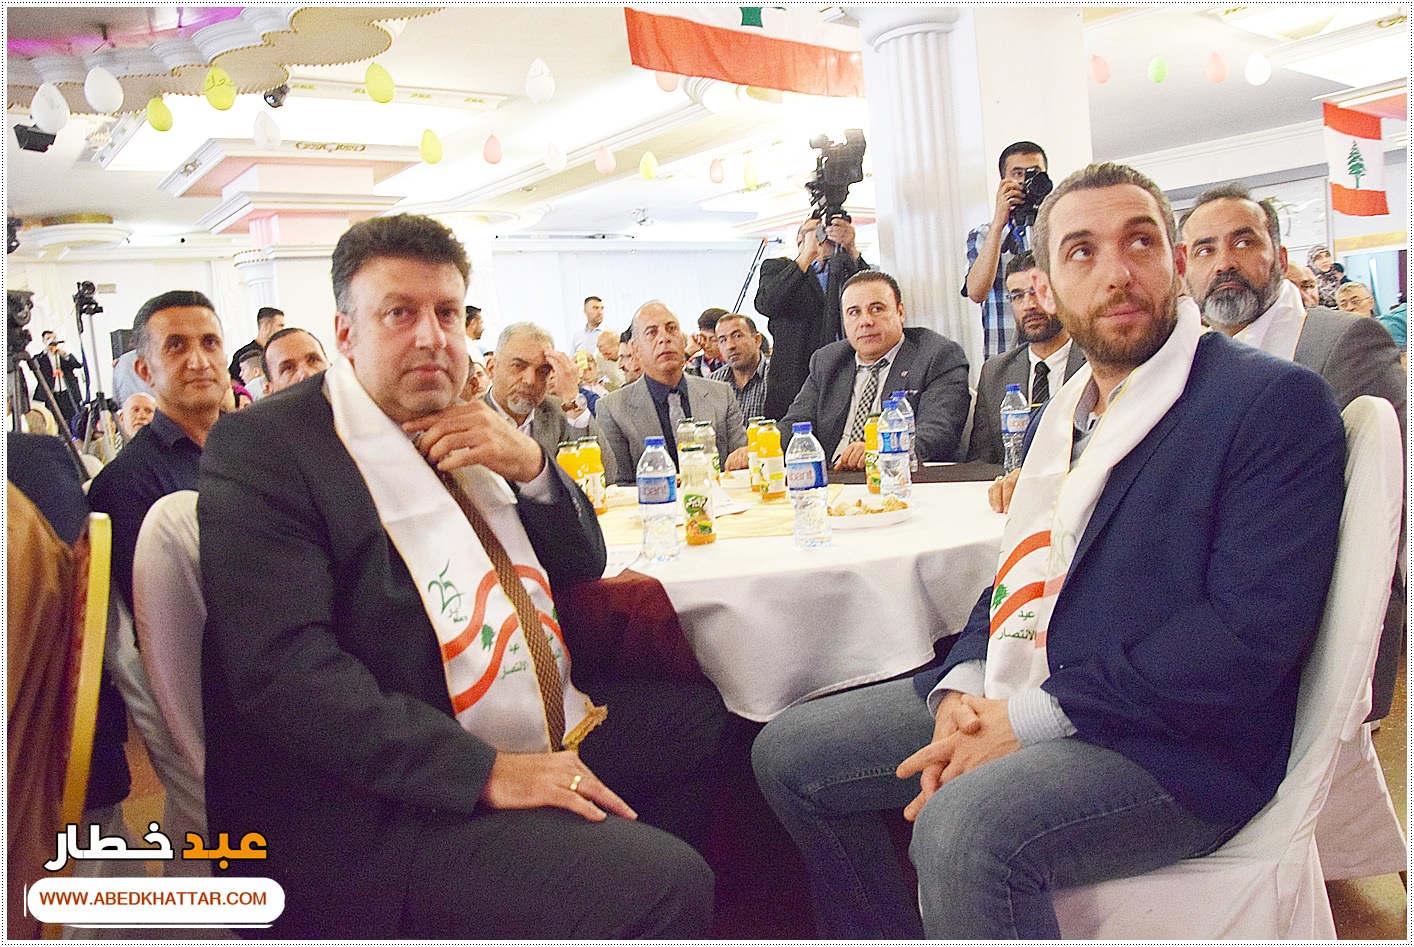 جمعية الإرشاد والجمعيات اللبنانية اقامت احتفال بمناسبة عيد النصر والتحرير بحضور الآعلامي سالم زهران